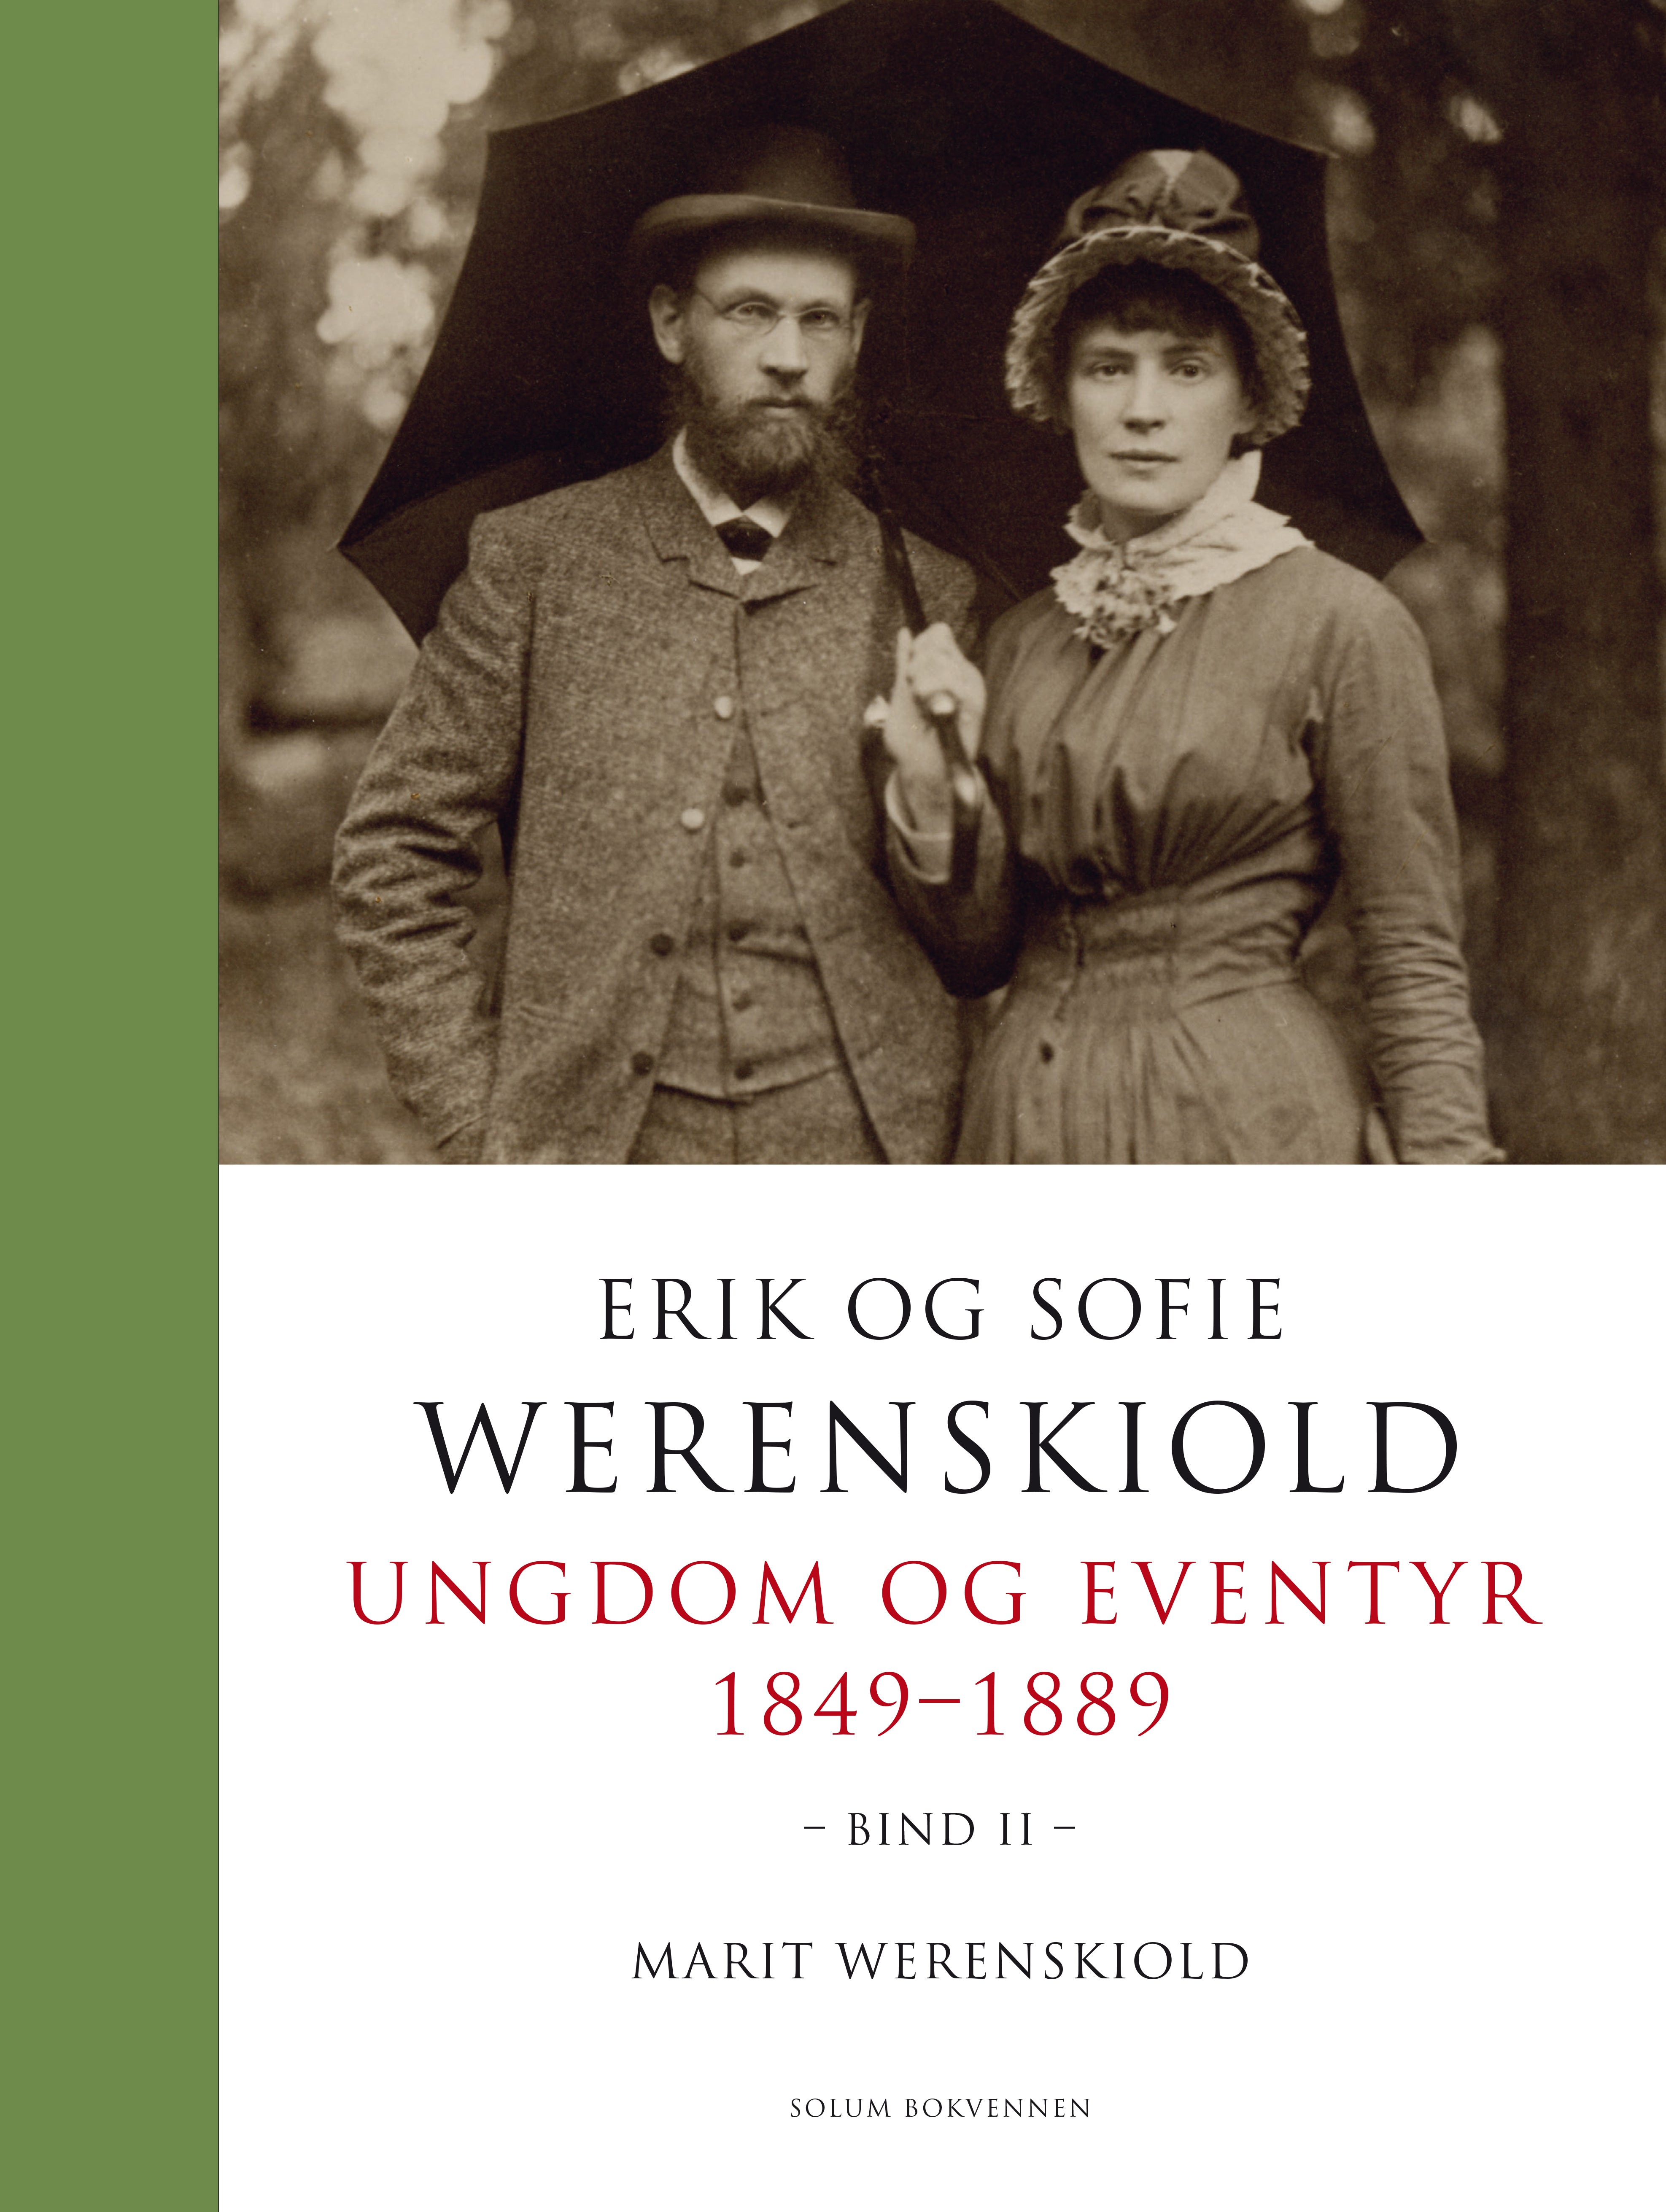 Erik og Sofie Werenskiold: Bind 1 og 2: ungdom og eventyr 1849-1889